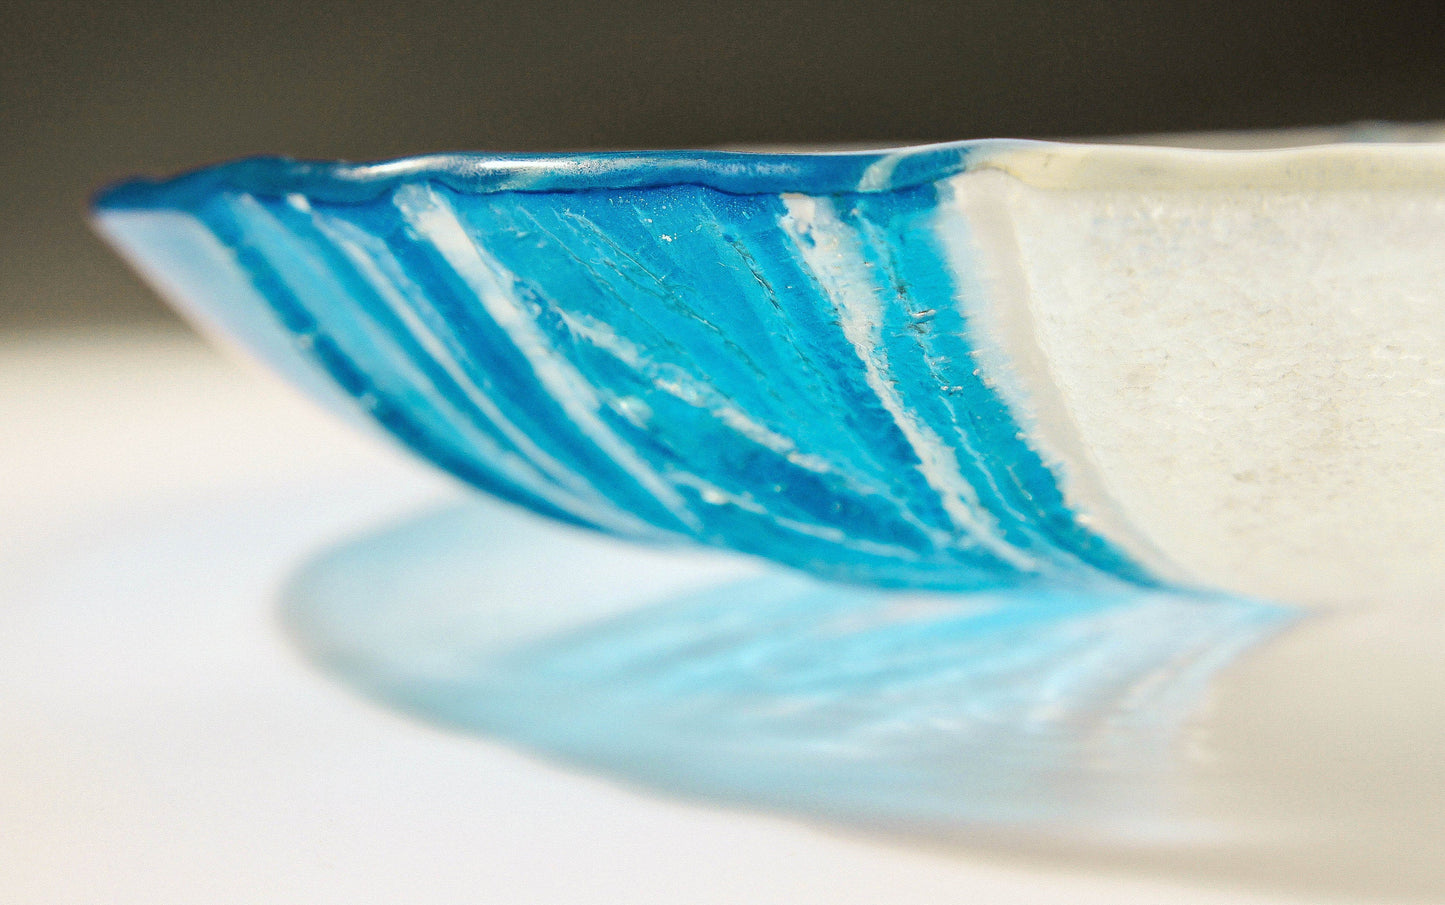 blue beach glass bowl